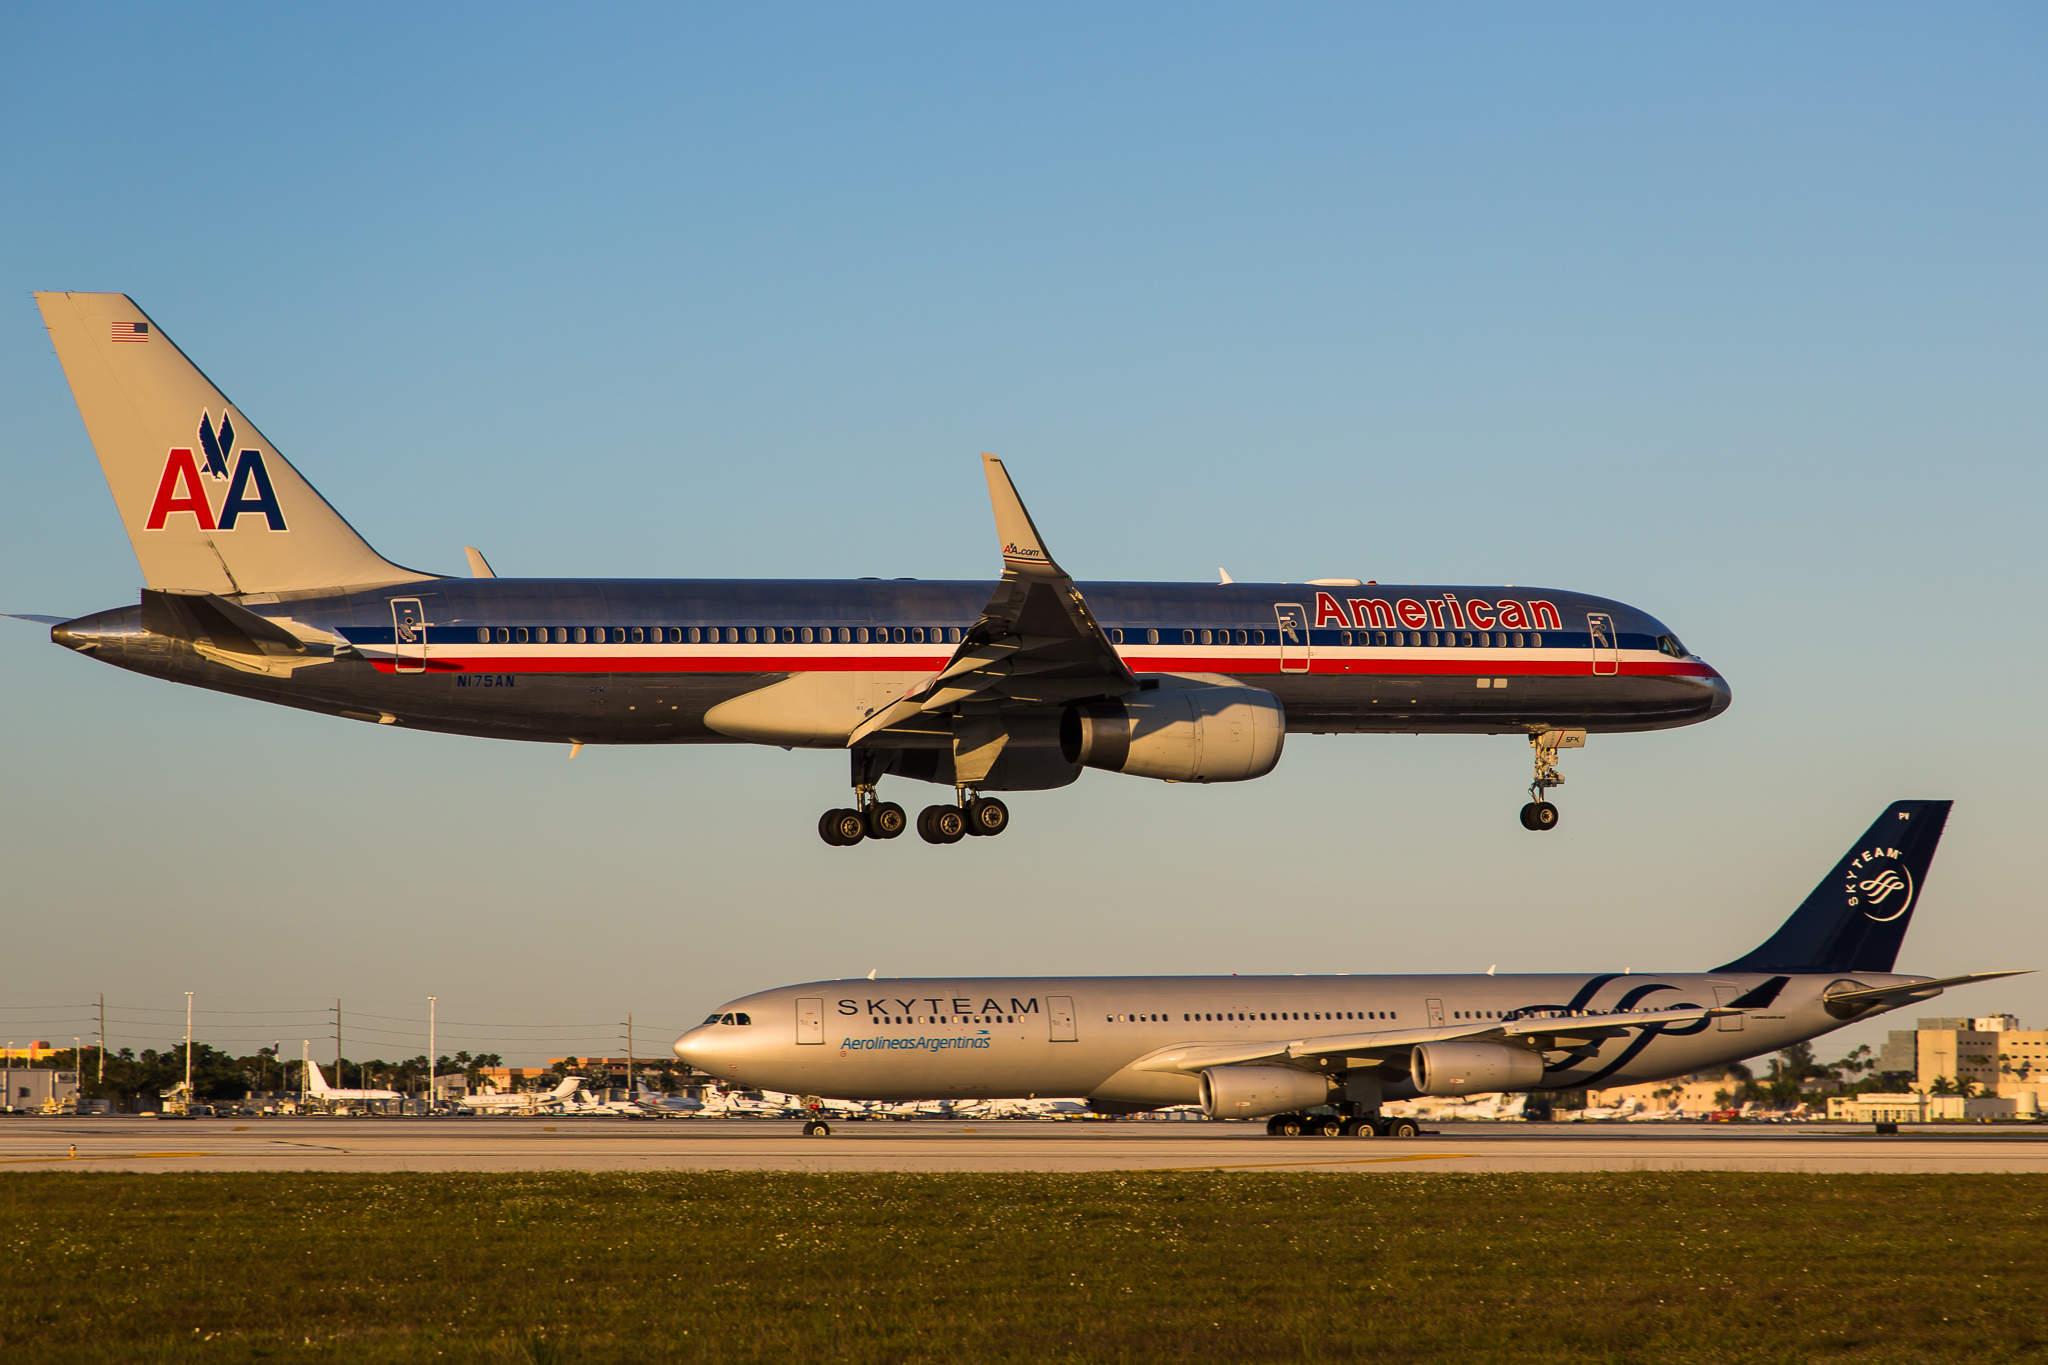 Un avion d'American Airlines atterrit dans un aéroport.